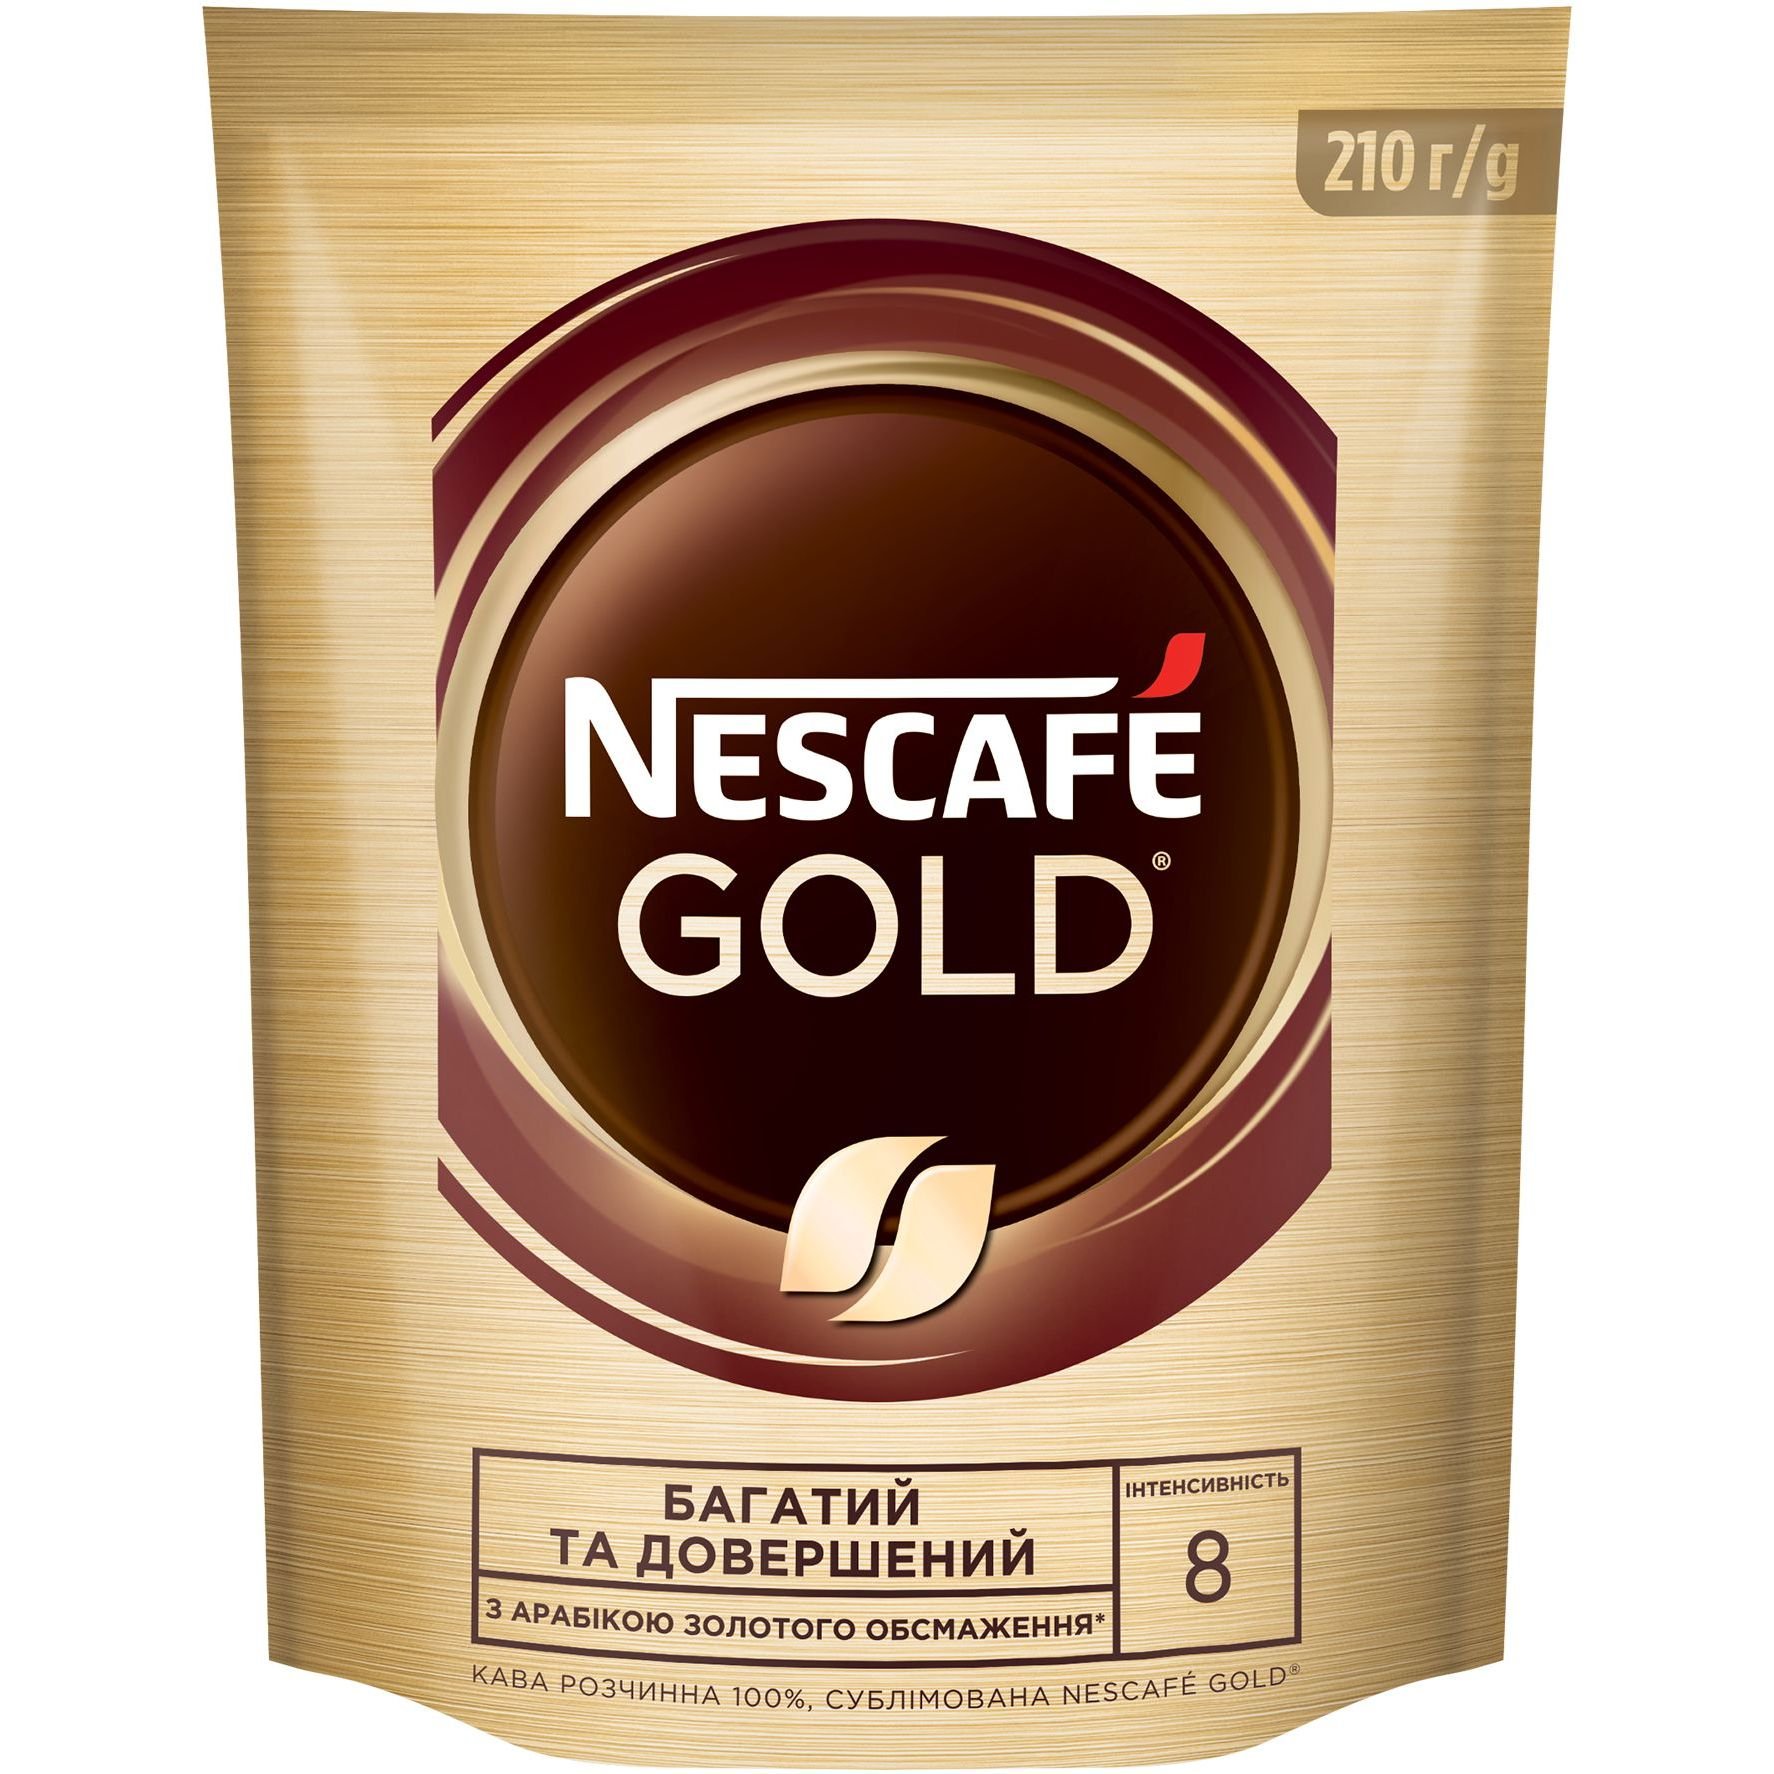 Кофе растворимый Nescafe Gold 210 г - фото 1